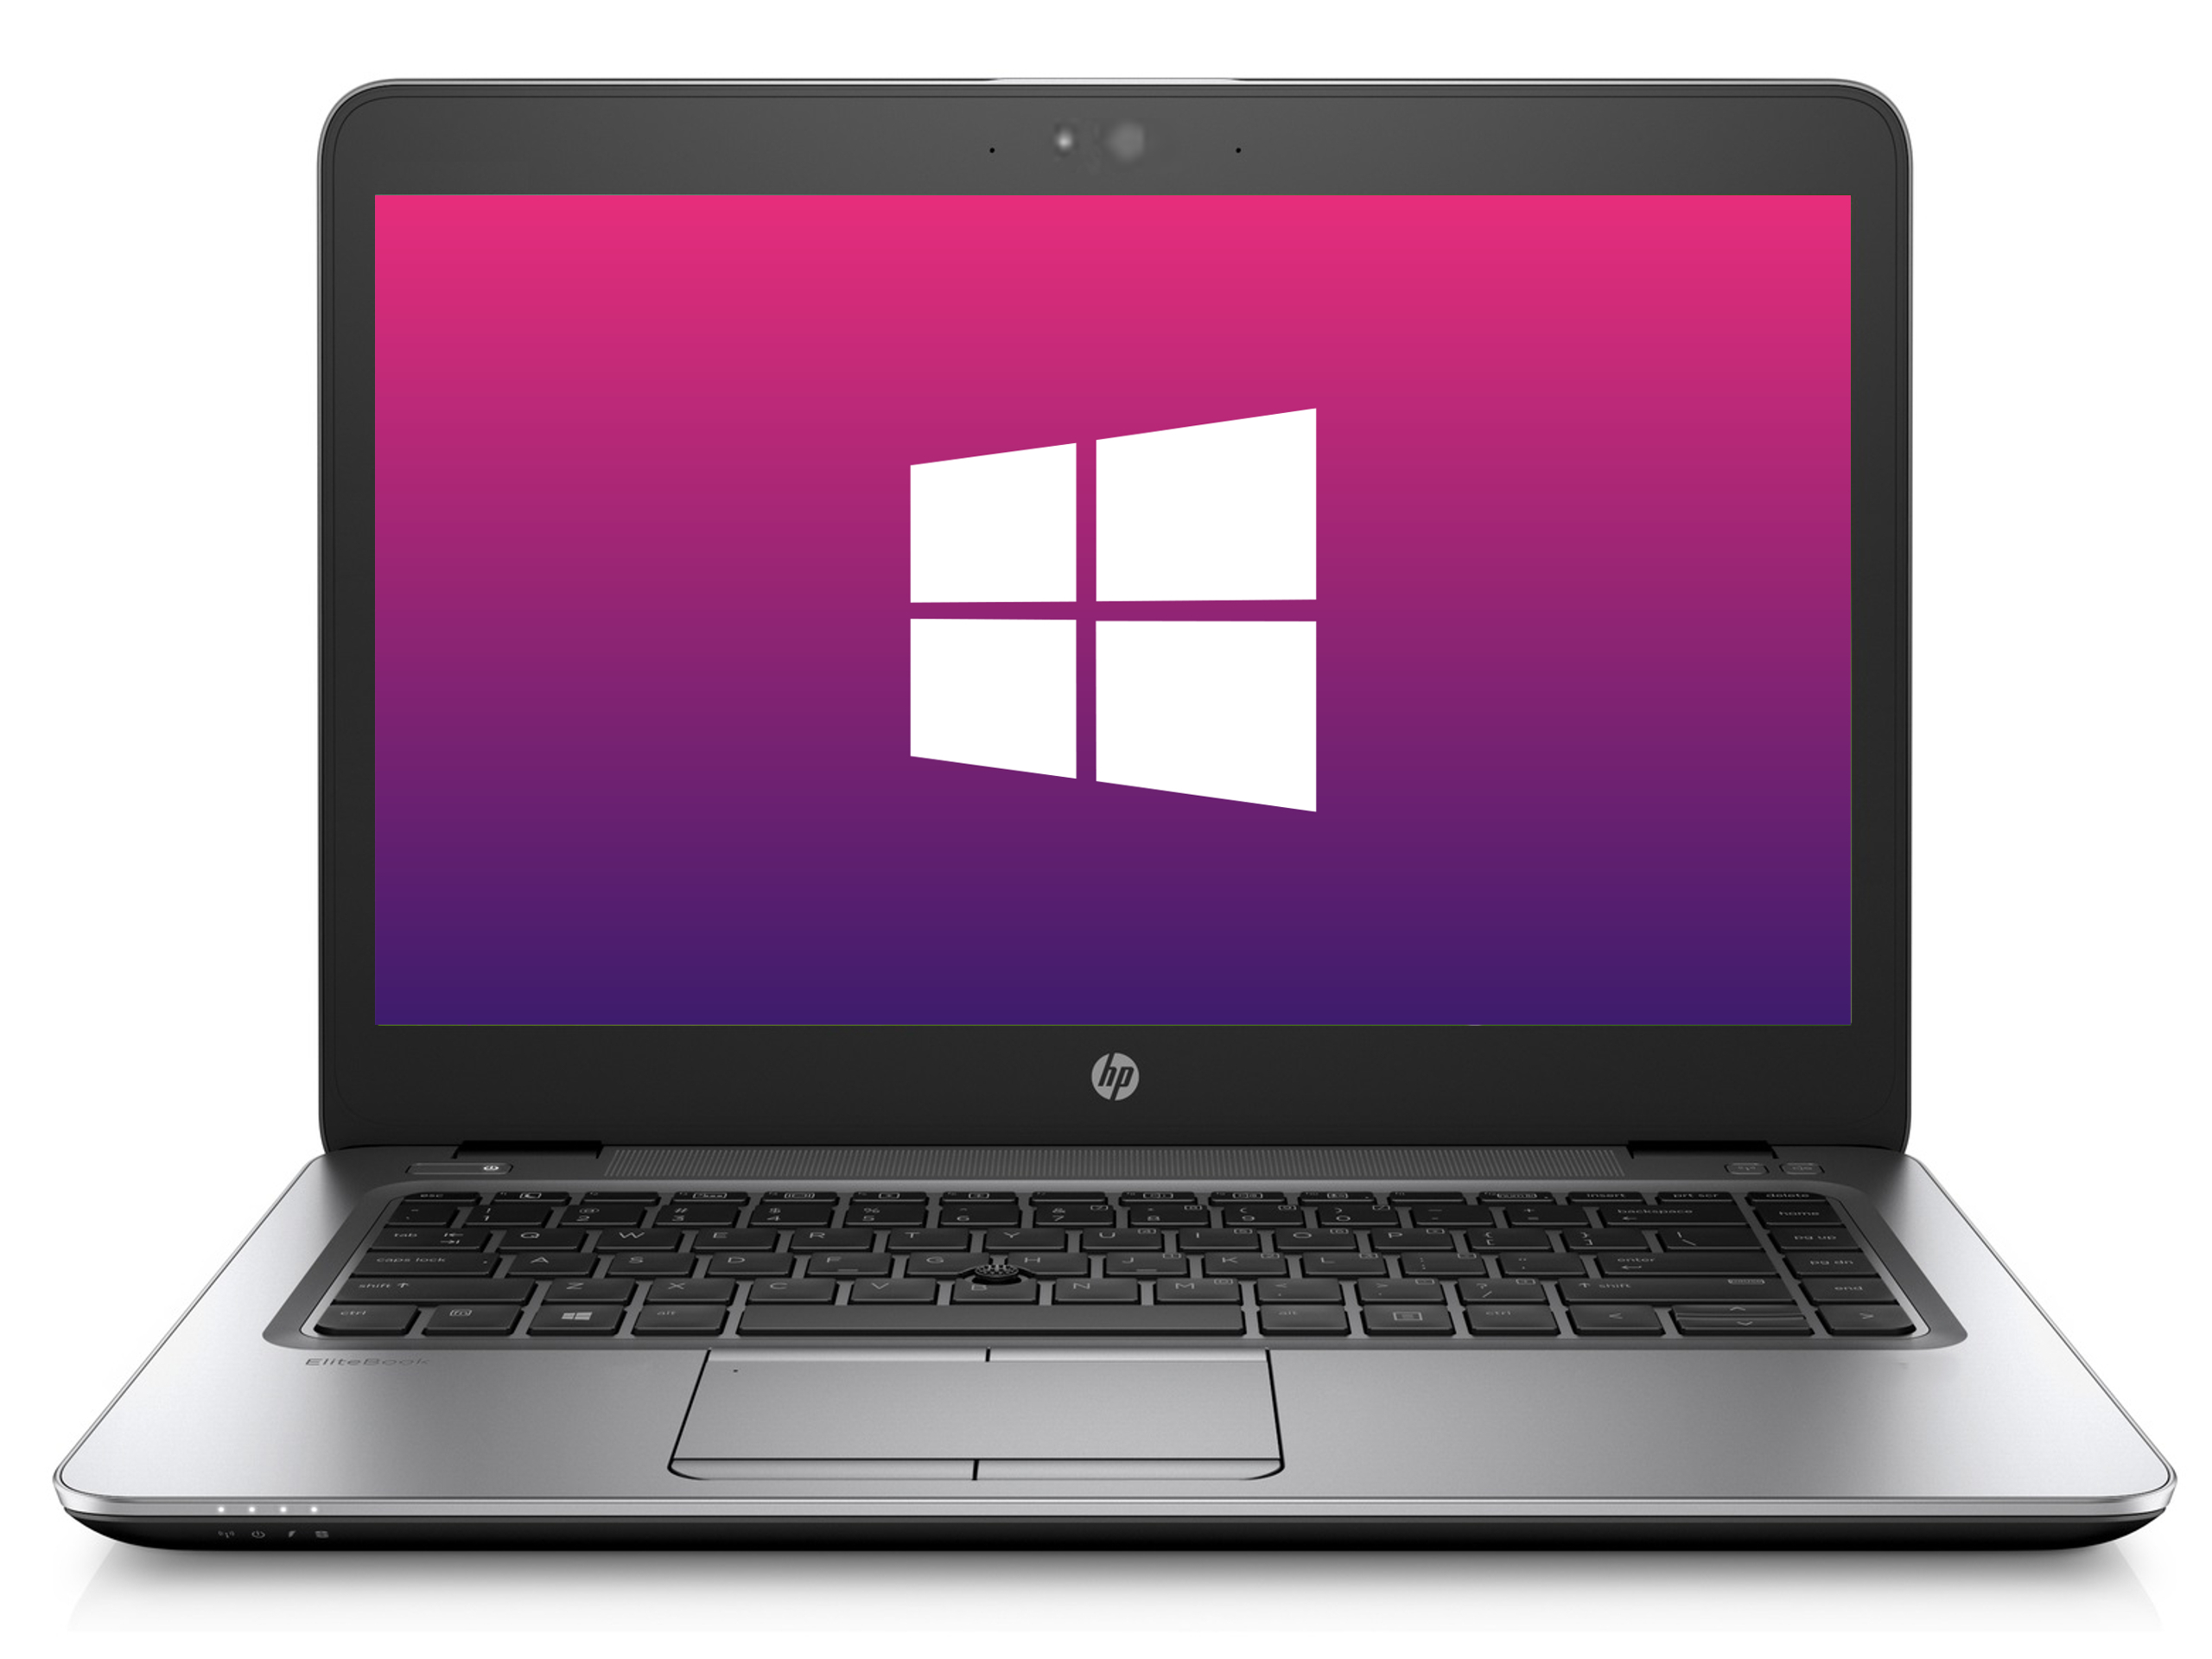 Ultrabook HP 840 G3 * 1366x768 * 8GB * 240GB SSD